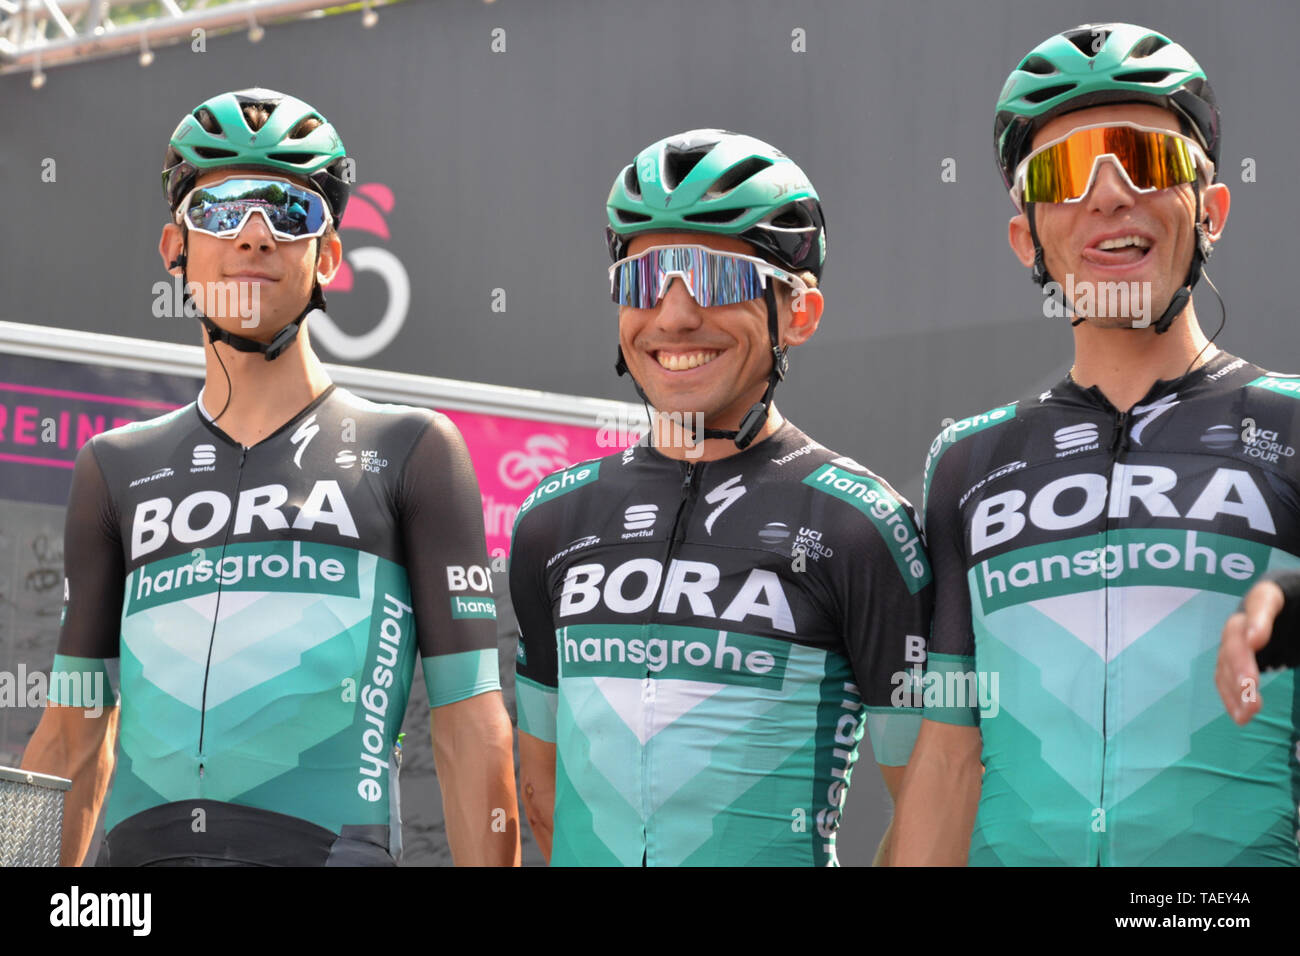 Bora équipe rider de l'Italie, Cesare Benedetti, Pinerolo Ville , au cours de la 102e Giro d'Italia 2019, Stade 13 a 196km à l'étape de Pinerolo Ceresole Reale (Lago Serrù) 2247m . Banque D'Images